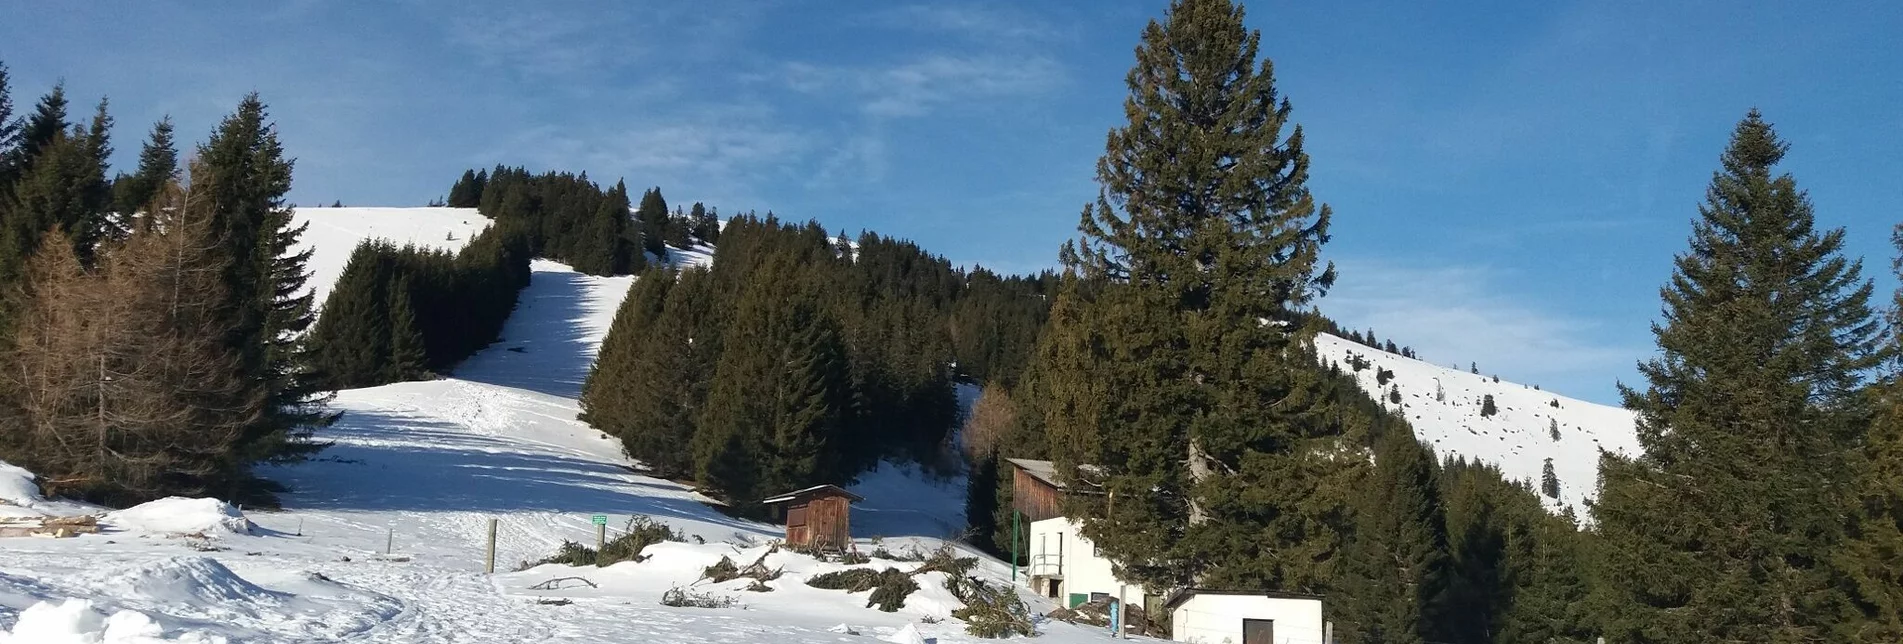 Schneeschuh Unberührte Gaberl-Runde - Touren-Impression #1 | © Region Graz